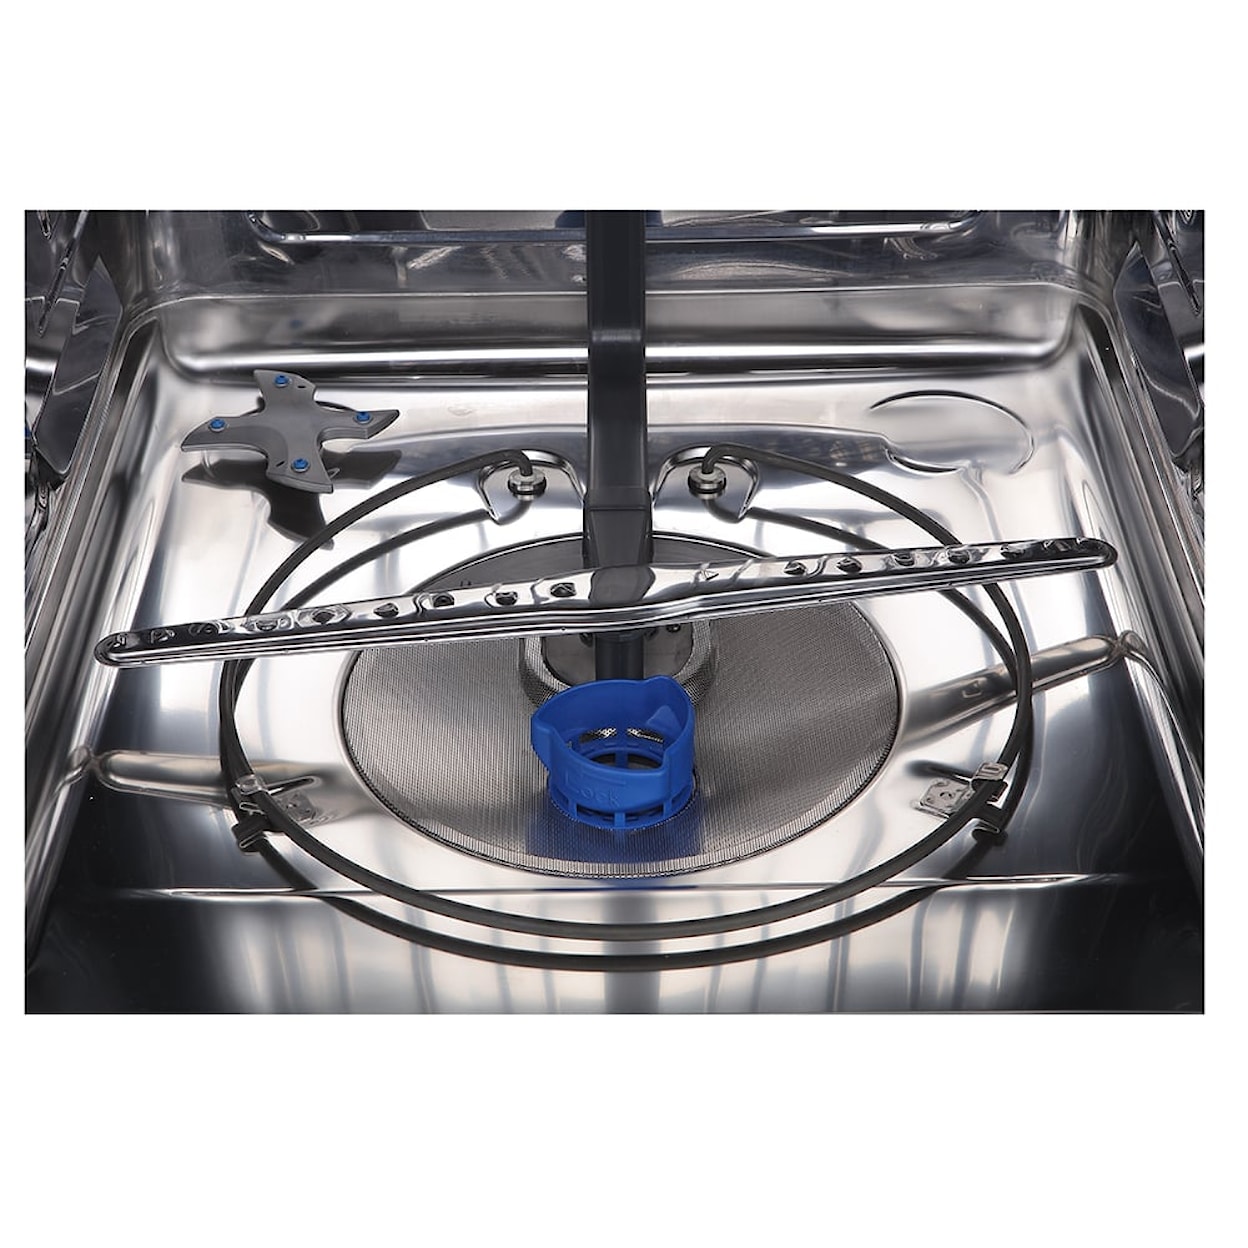 GE Appliances Dishwashers 24" Front Control Dishwasher - Slate